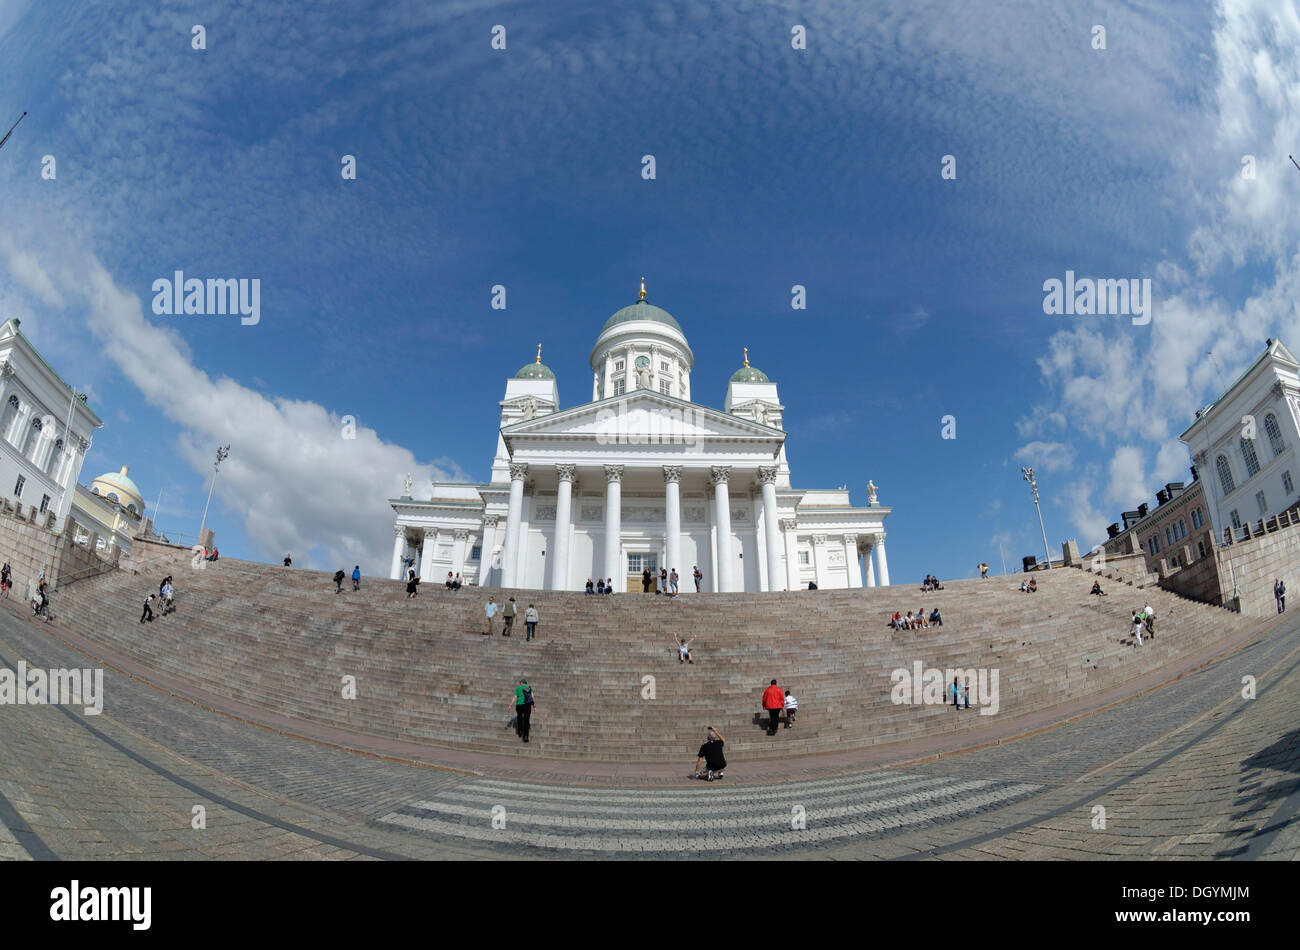 La piazza del senato, senaatintori, Cattedrale di Helsinki con scale, Vista fisheye, Helsinki, Uusimaa, Finlandia Foto Stock